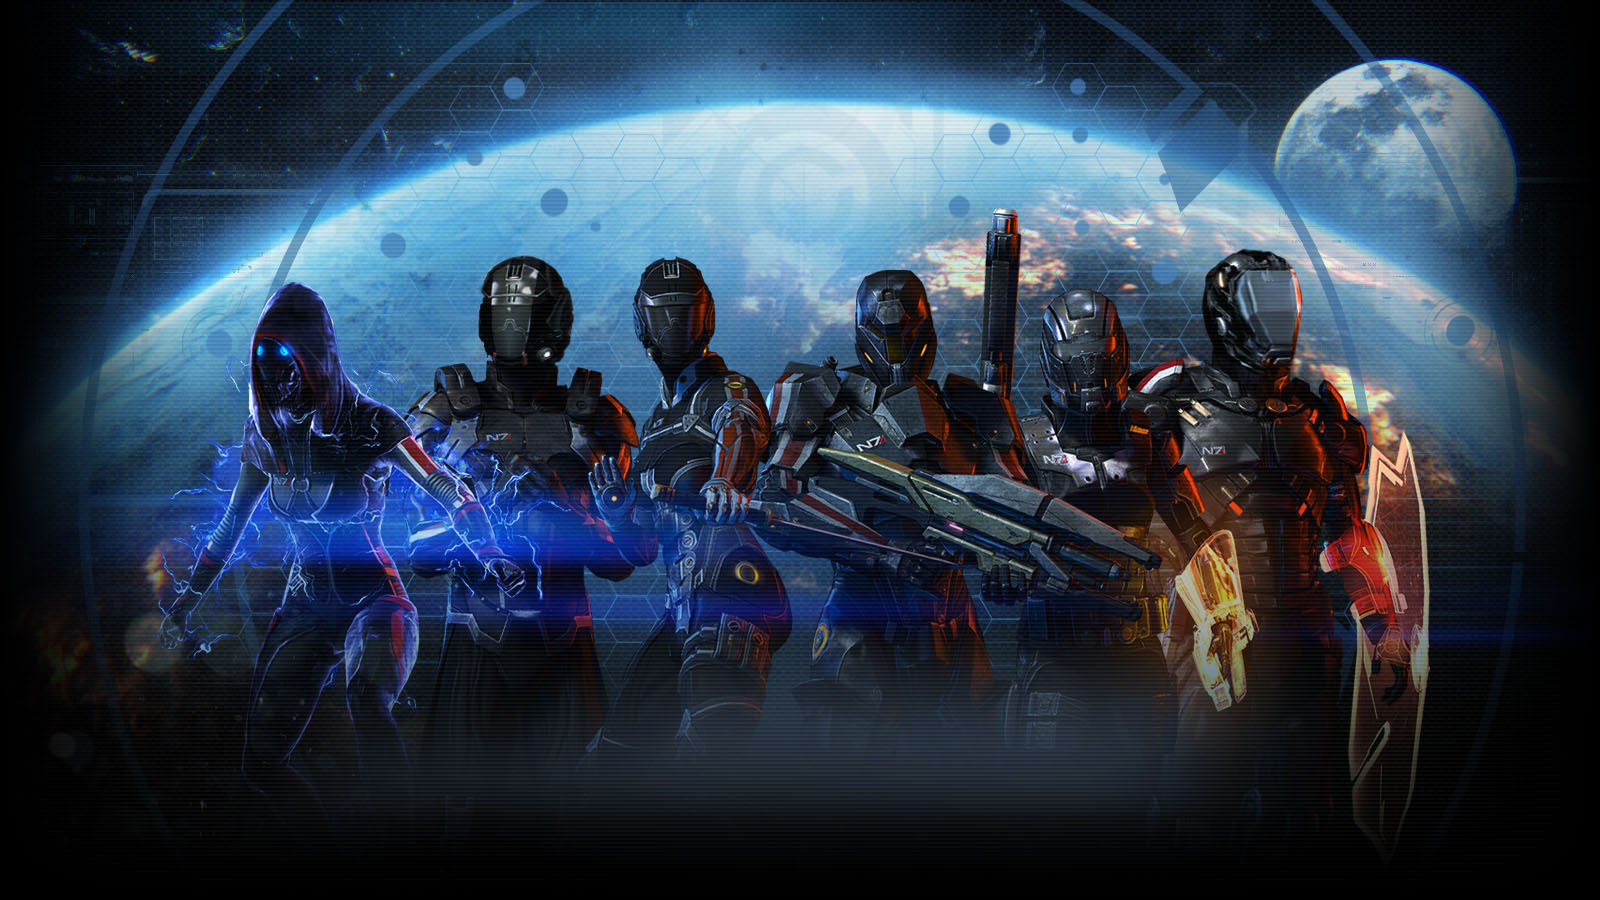 Video Game Mass Effect Wallpaper